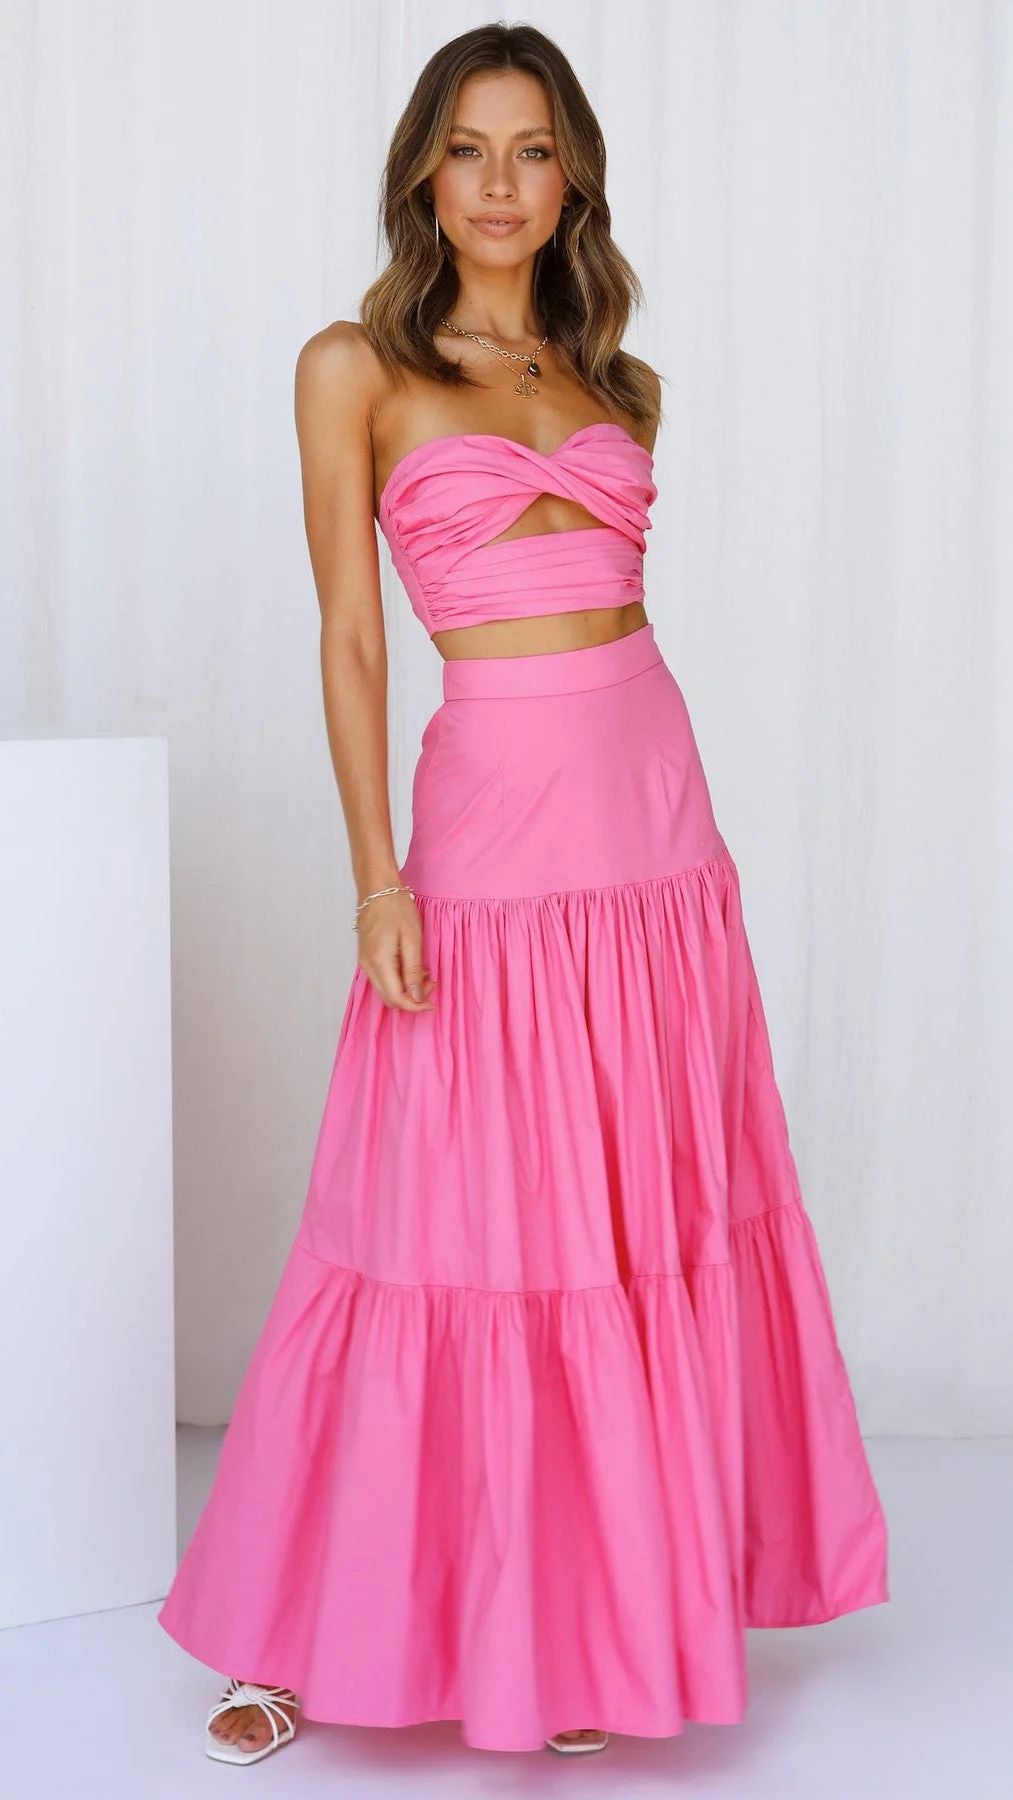 Hot Pink Off Shoulder Top and Skirt Sets